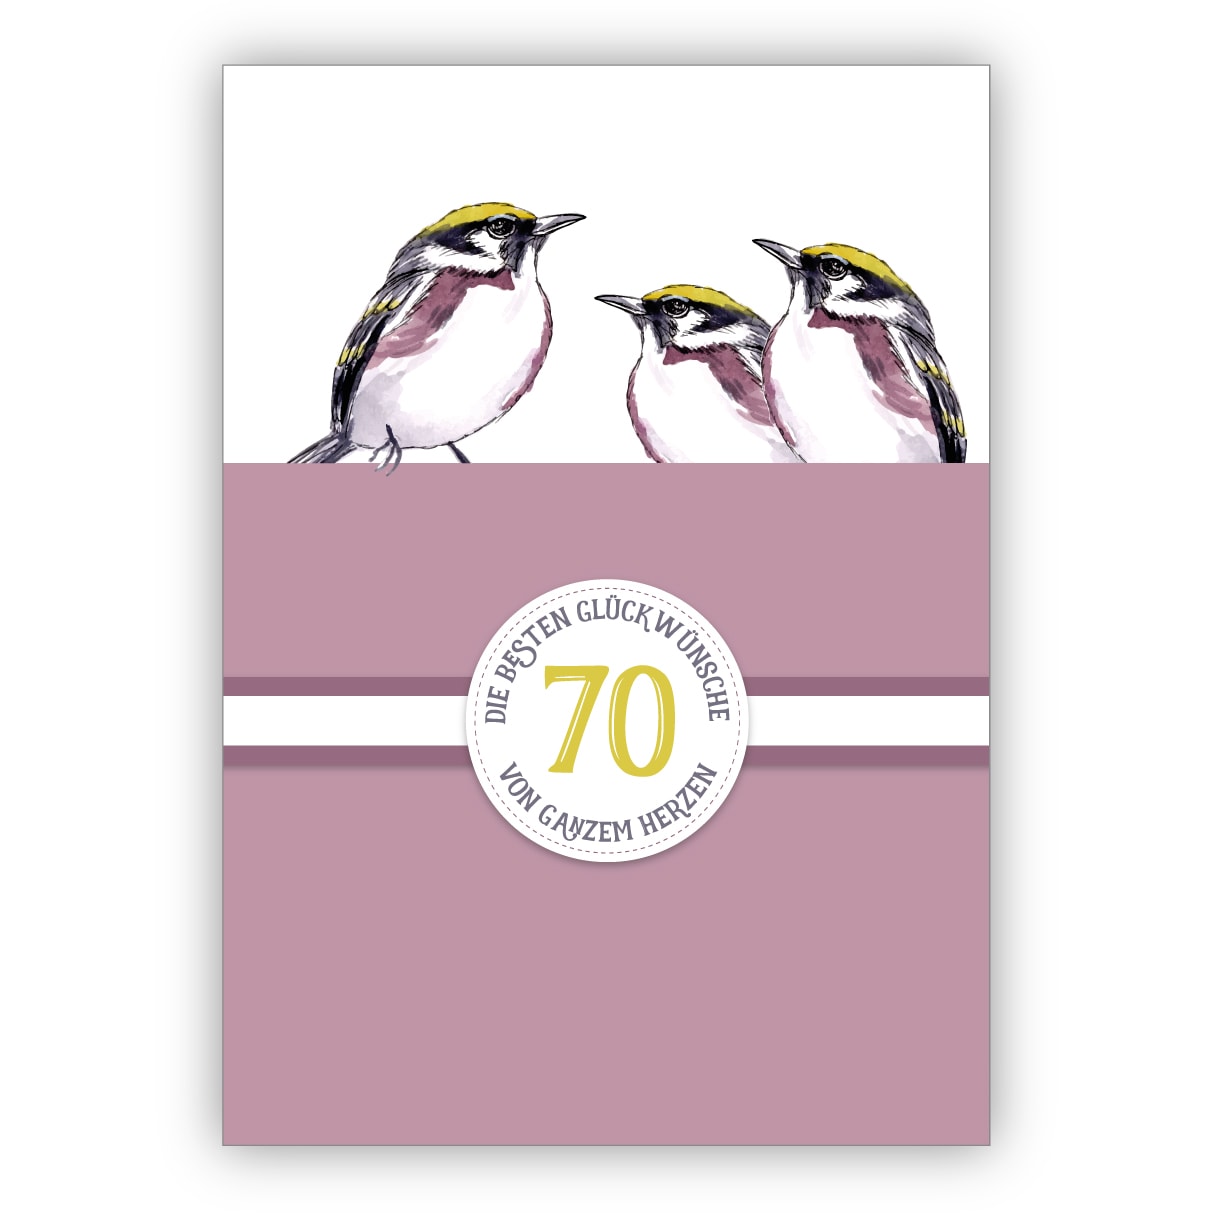 Elegante klassische Geburtstagskarte zum 70. Geburtstag mit schönen Vögeln in lila: 80 Die besten Glückwünsche von ganzem Herzen